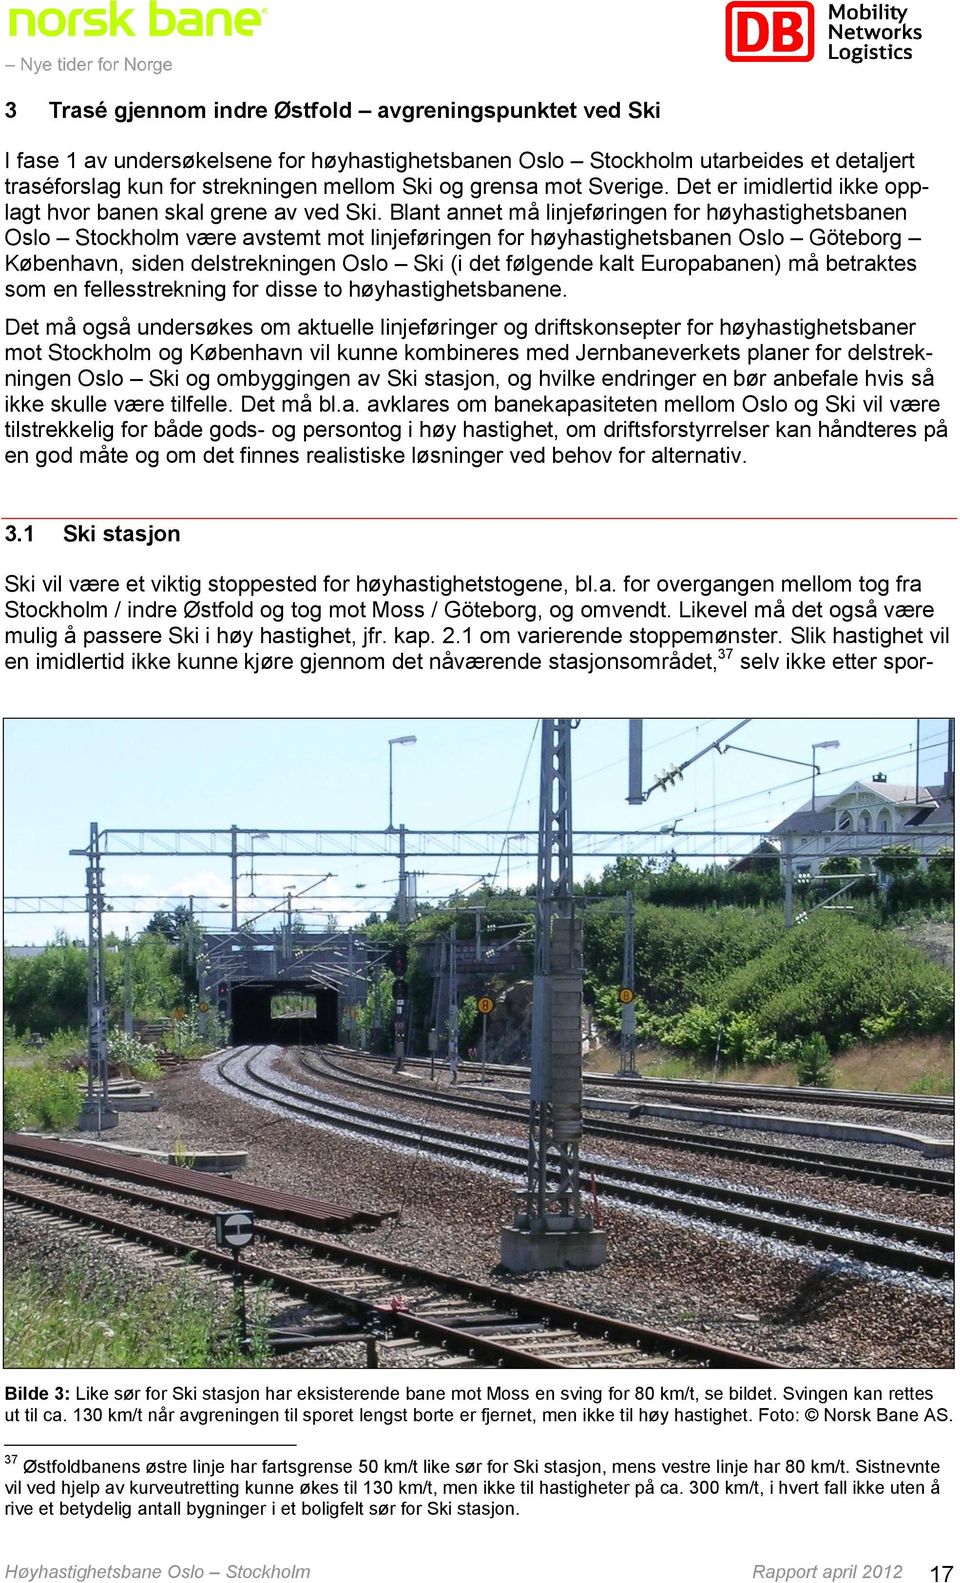 Blant annet må linjeføringen for høyhastighetsbanen Oslo Stockholm være avstemt mot linjeføringen for høyhastighetsbanen Oslo Göteborg København, siden delstrekningen Oslo Ski (i det følgende kalt